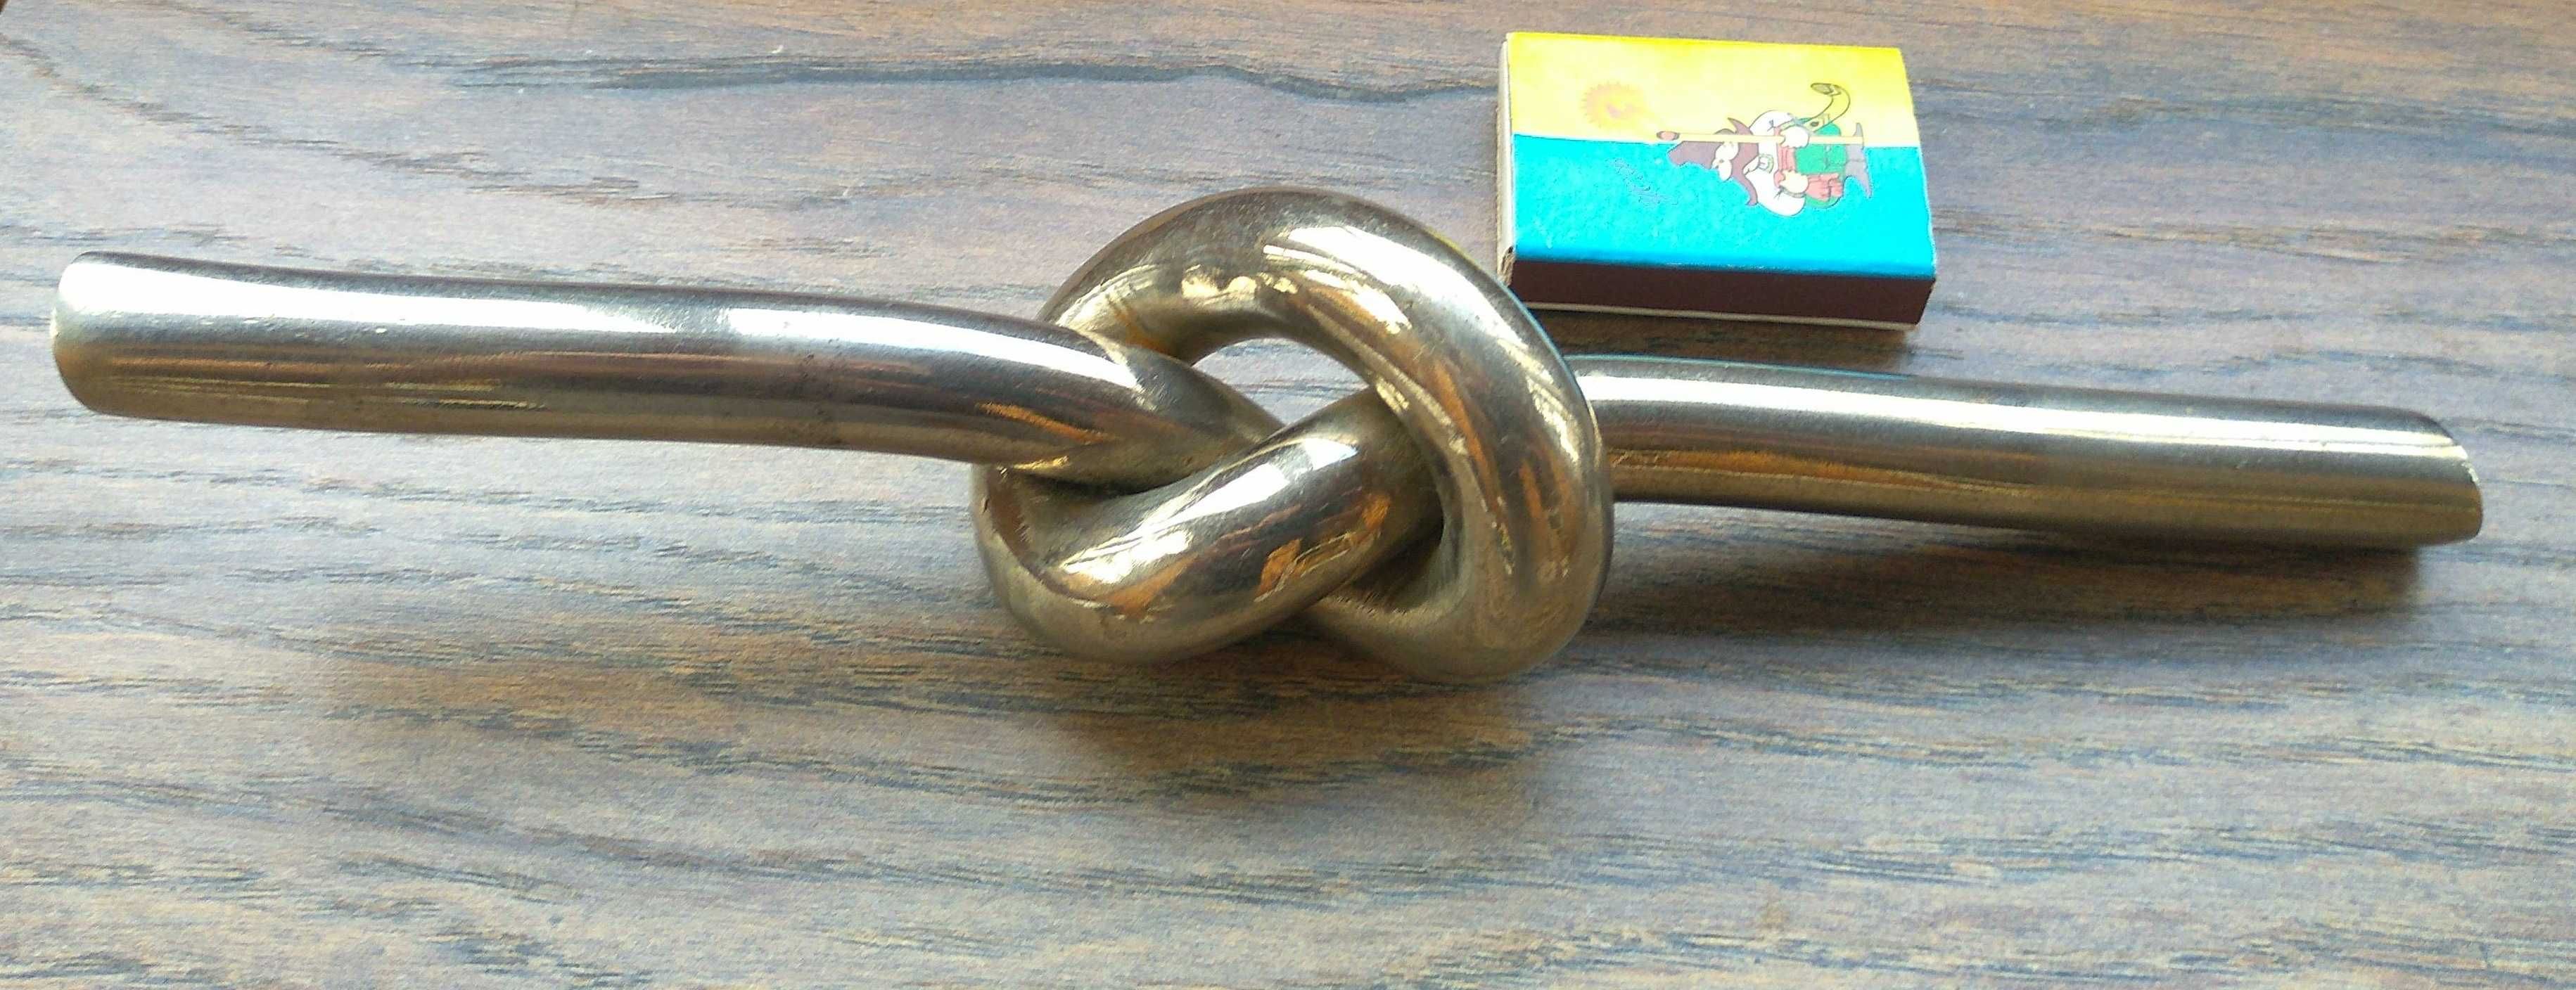 Антиквариат Старинный металлический узел